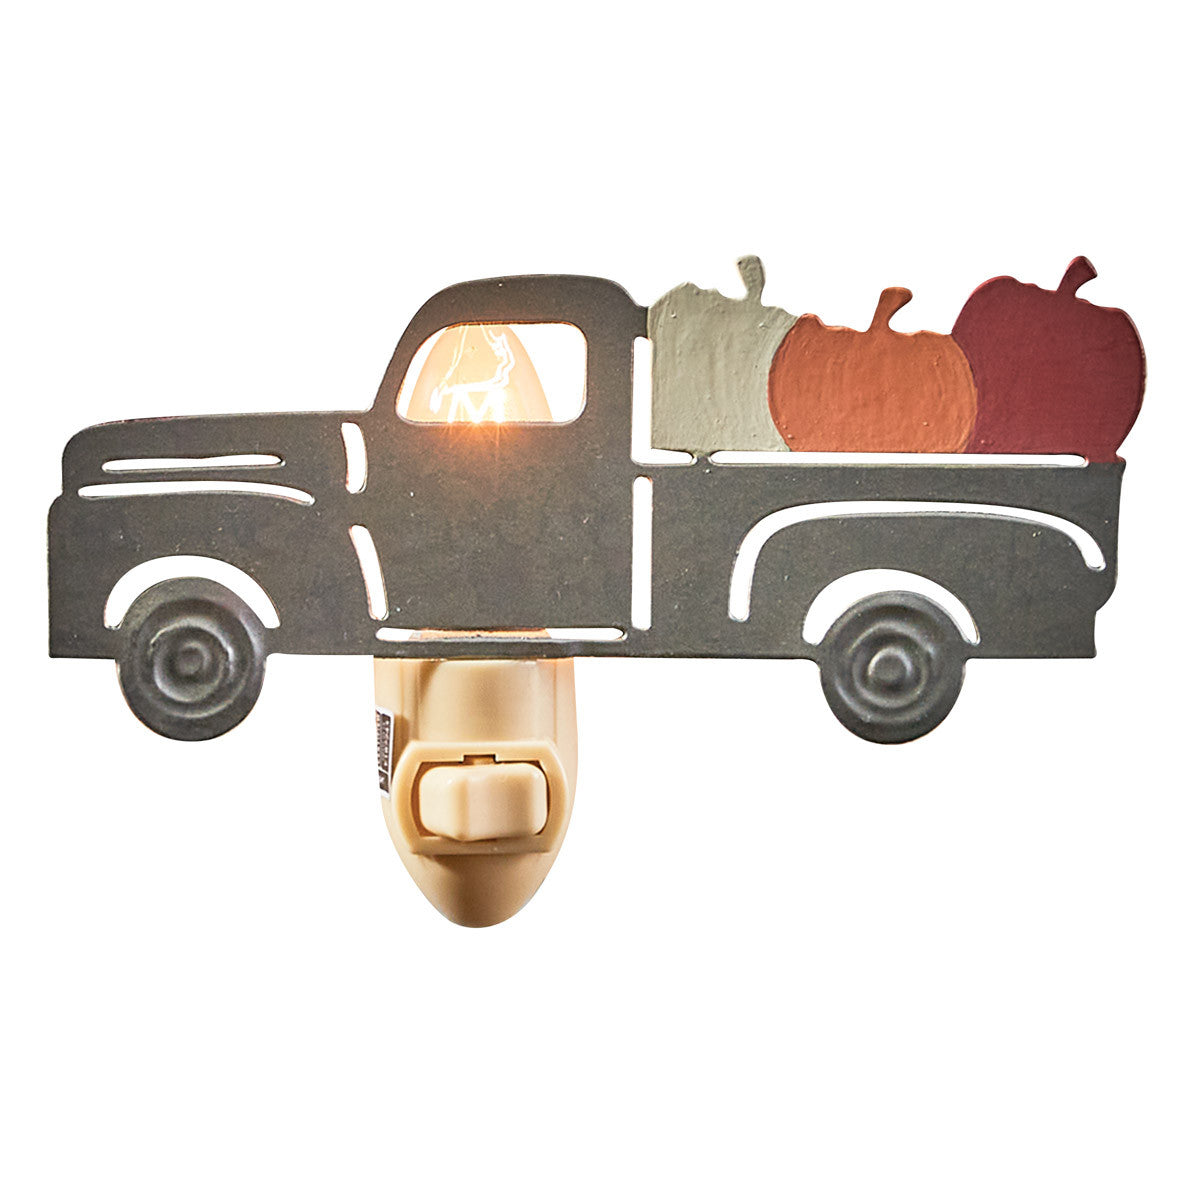 Truck With Pumpkins Night Light - Park Designs